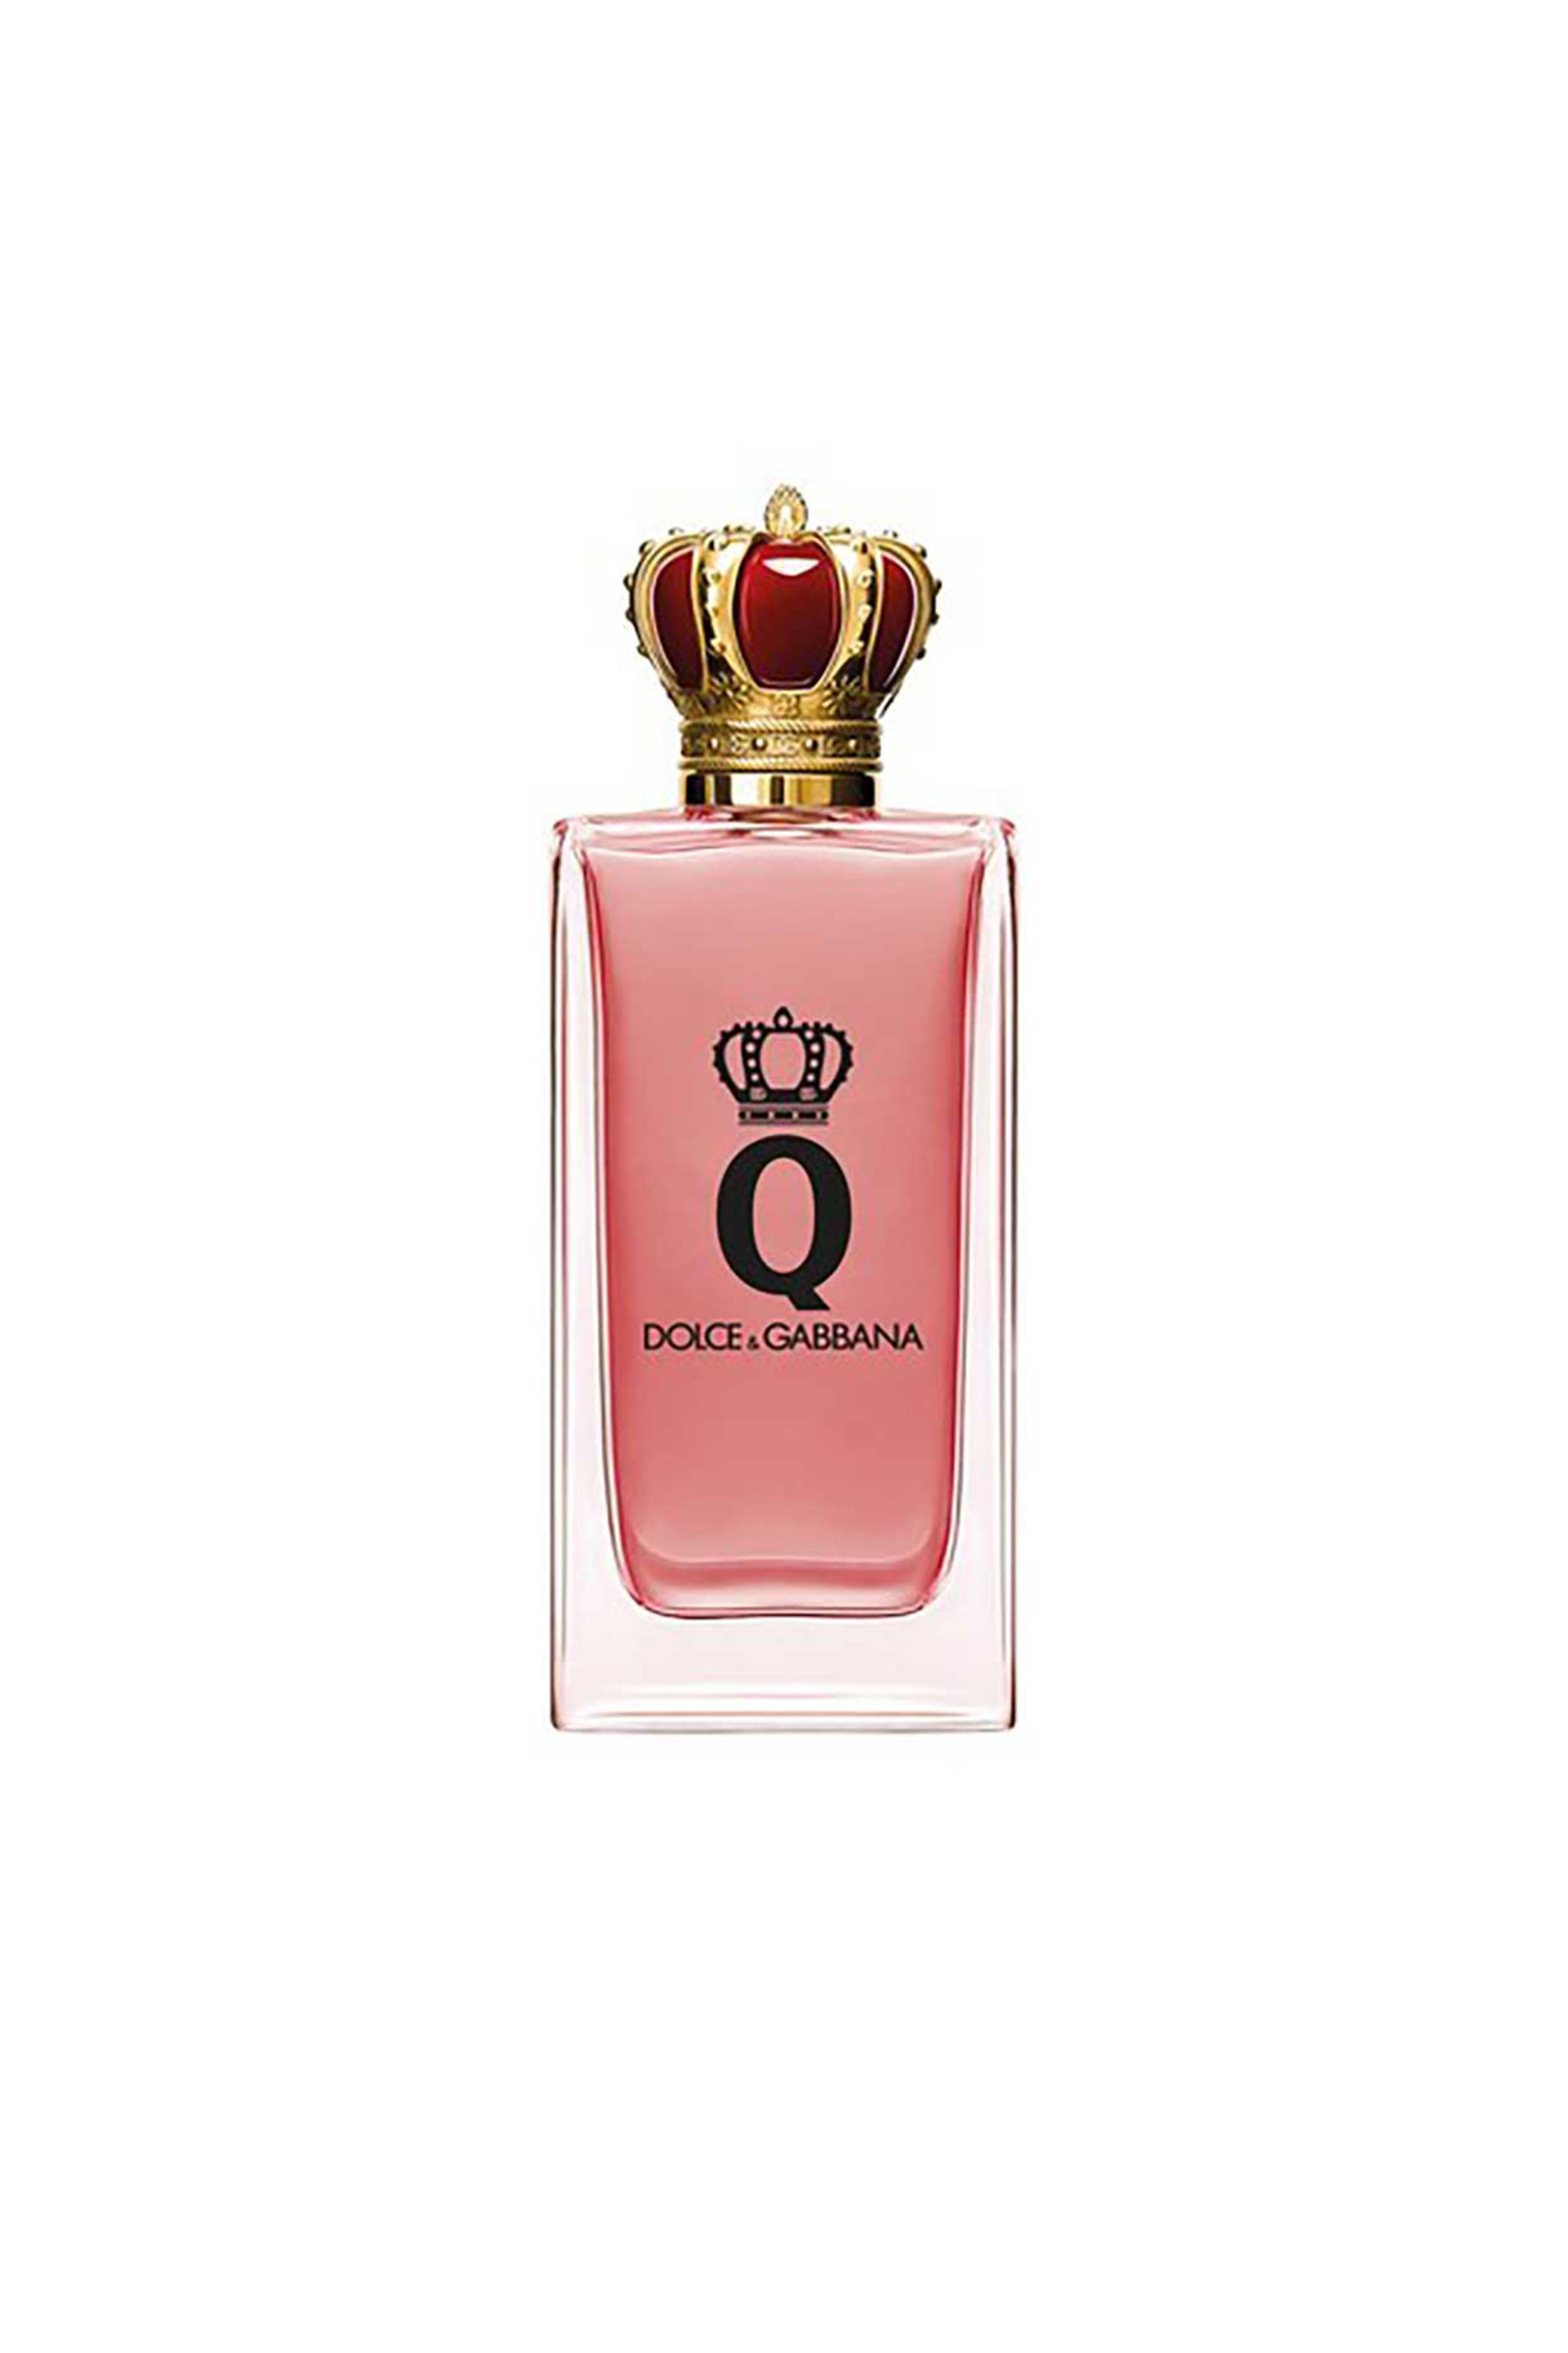 Ομορφιά > ΑΡΩΜΑΤΑ > Γυναικεία Αρώματα > Eau de Parfum - Parfum Dolce & Gabbana Q by Dolce&Gabbana Eau de Parfum Intense